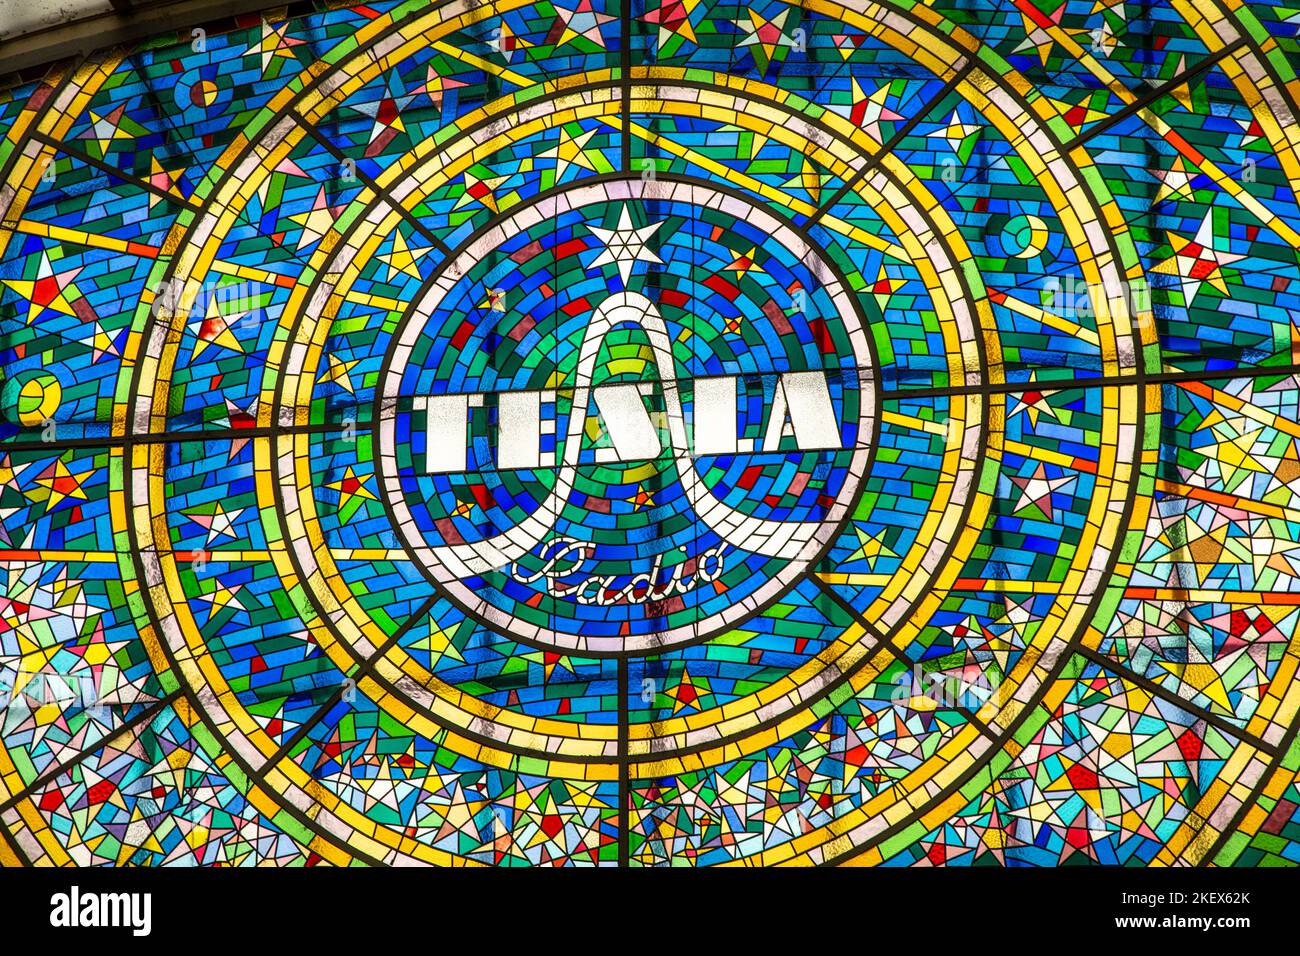 Vitraux colorés avec logo Tesla radio dans le passage Svetozor, Prague, République tchèque Banque D'Images